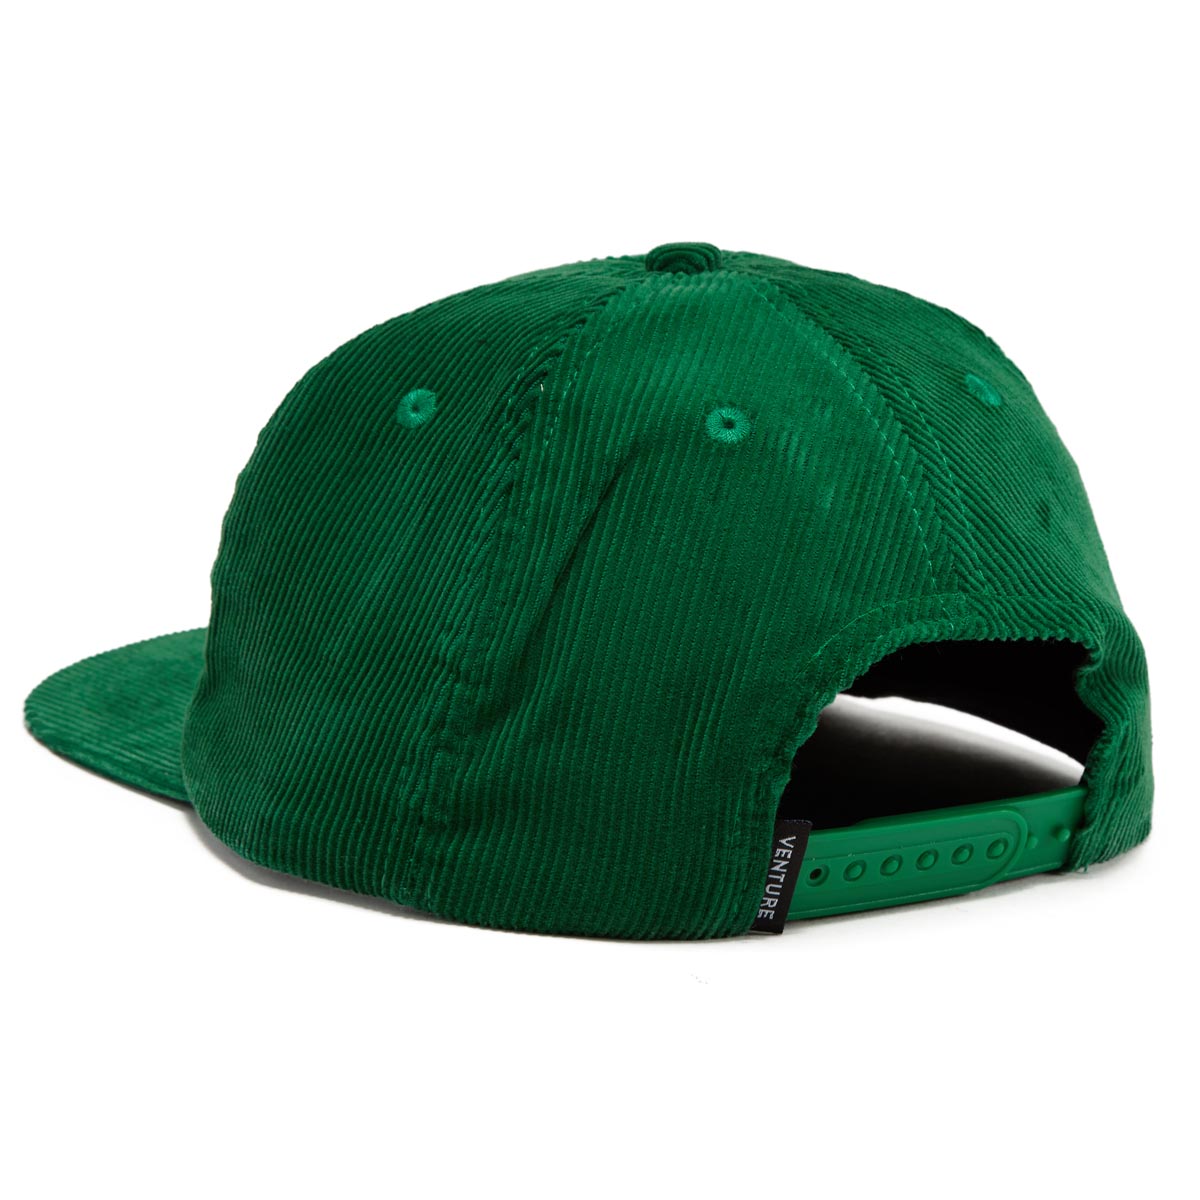 Venture Heritage Hat - Dark Green image 2